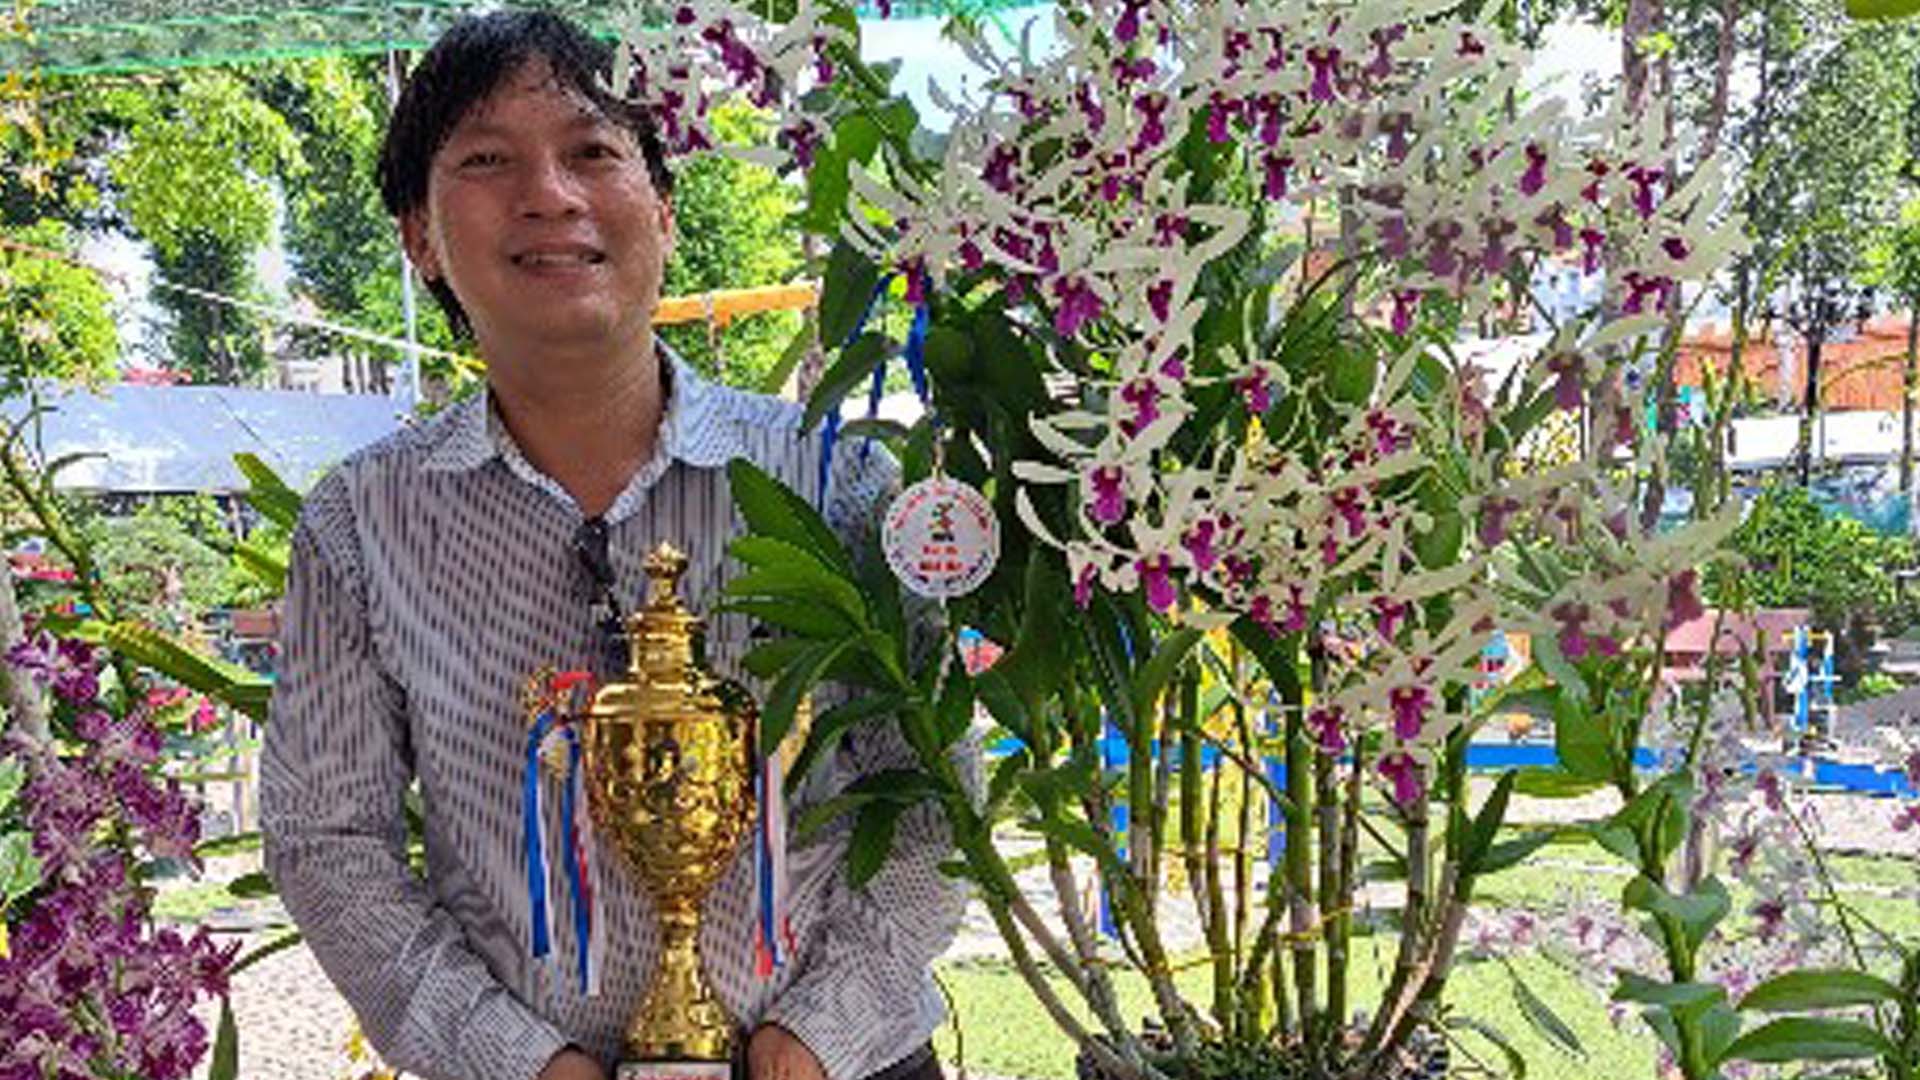 TP Hồ Chí Minh: Giám đốc kinh doanh trở thành nghệ nhân hoa lan vì sự đam mê